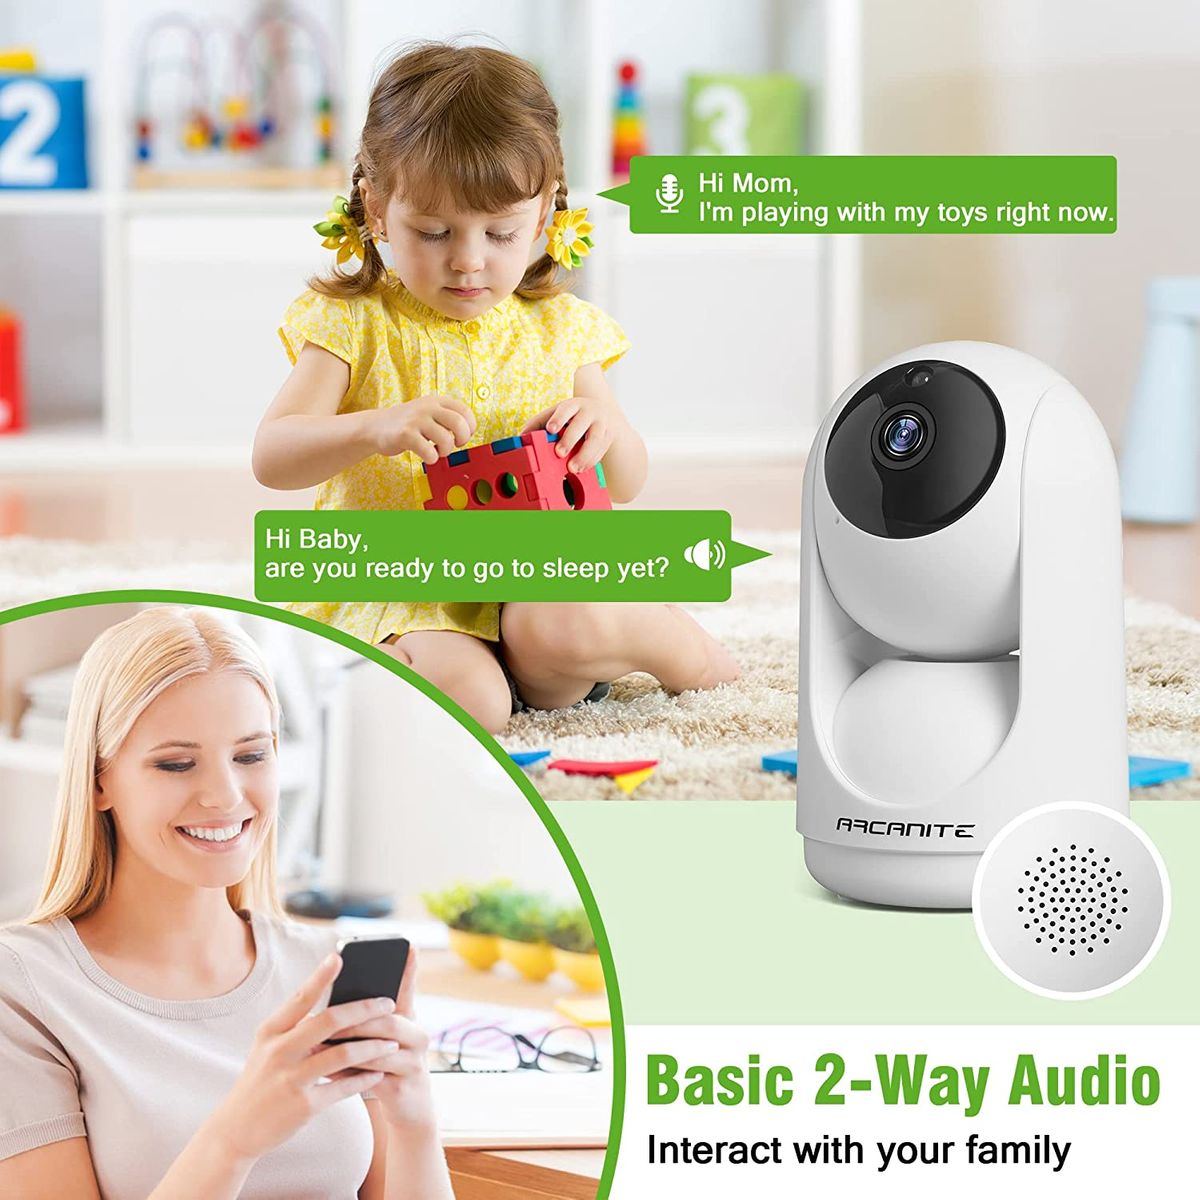 ARCANITE 1080P Wireless Home Security WiFi IP-Kamera für die Überwachung von Babys und Haustieren, Handy-App für Fernbedienung, Nachtsicht, Audio, MicroSD-Kartensteckplatz, Weiß